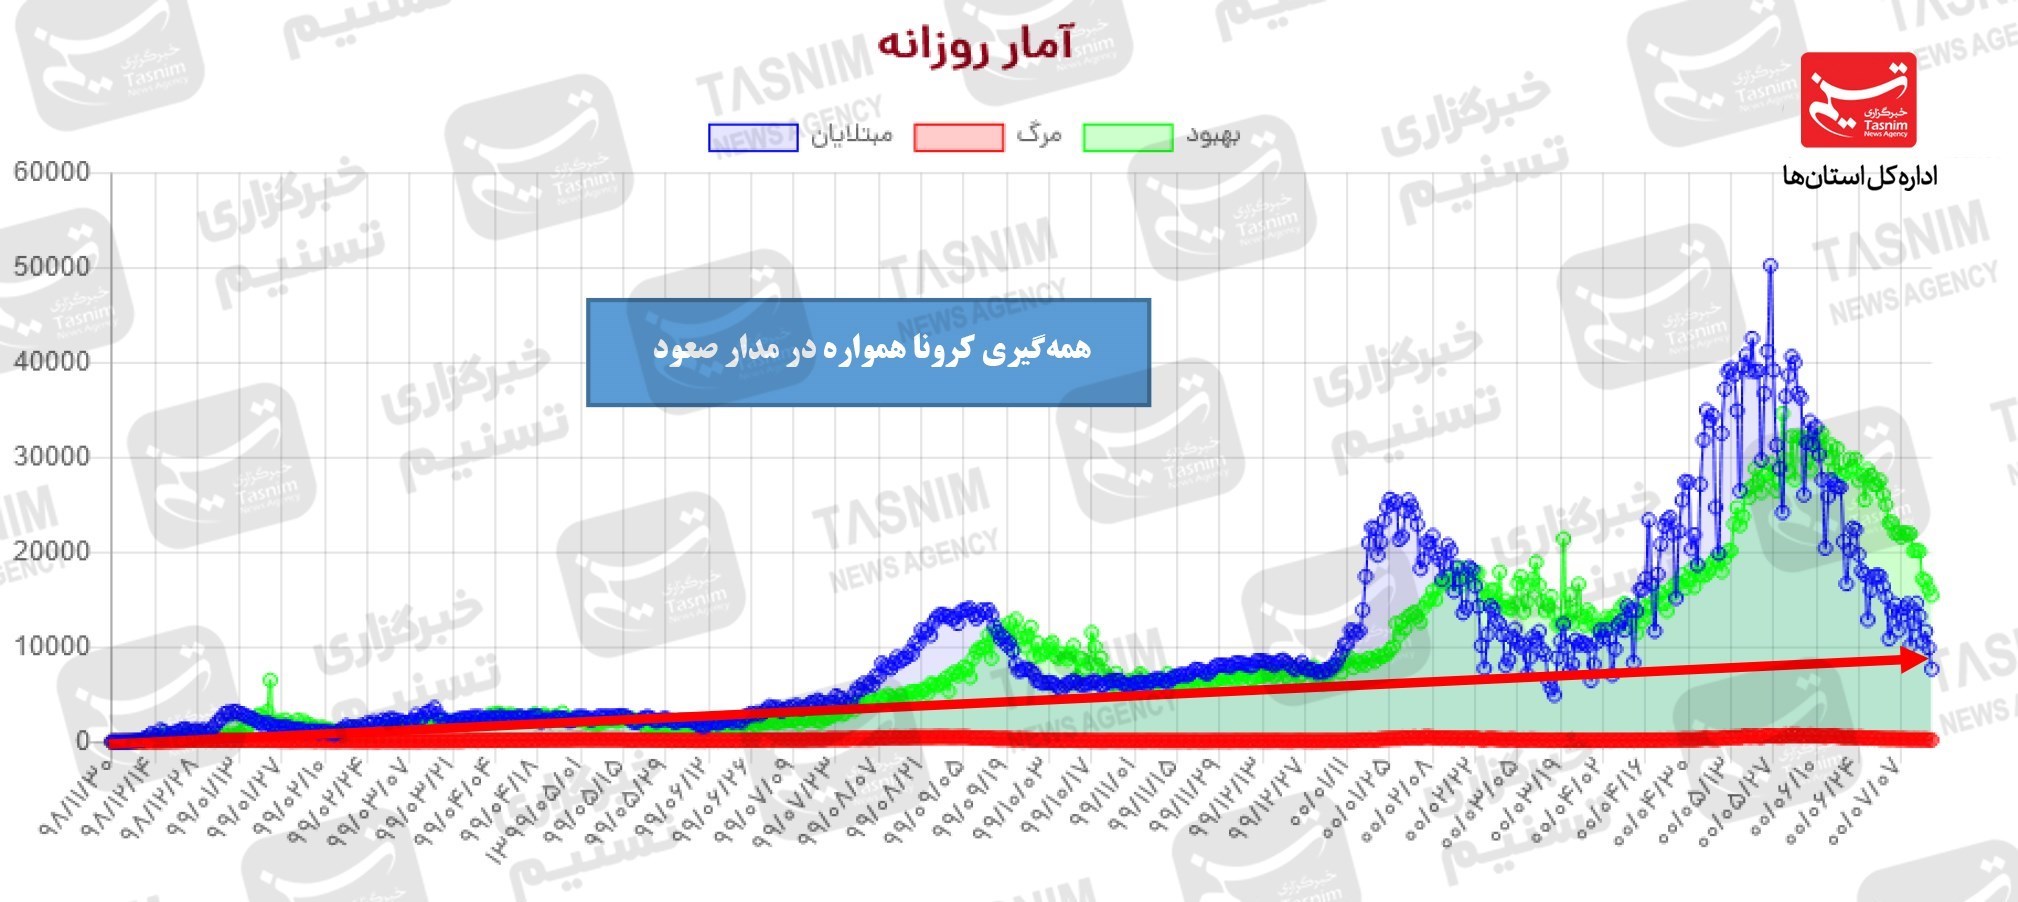 جدیدترین اخبار کرونا در ایران| هر دقیقه ۵ ابتلای جدید کرونایی ثبت شد/ عادی انگاری بلای جان ثبات شرایط می‌شود + نقشه و نمودار